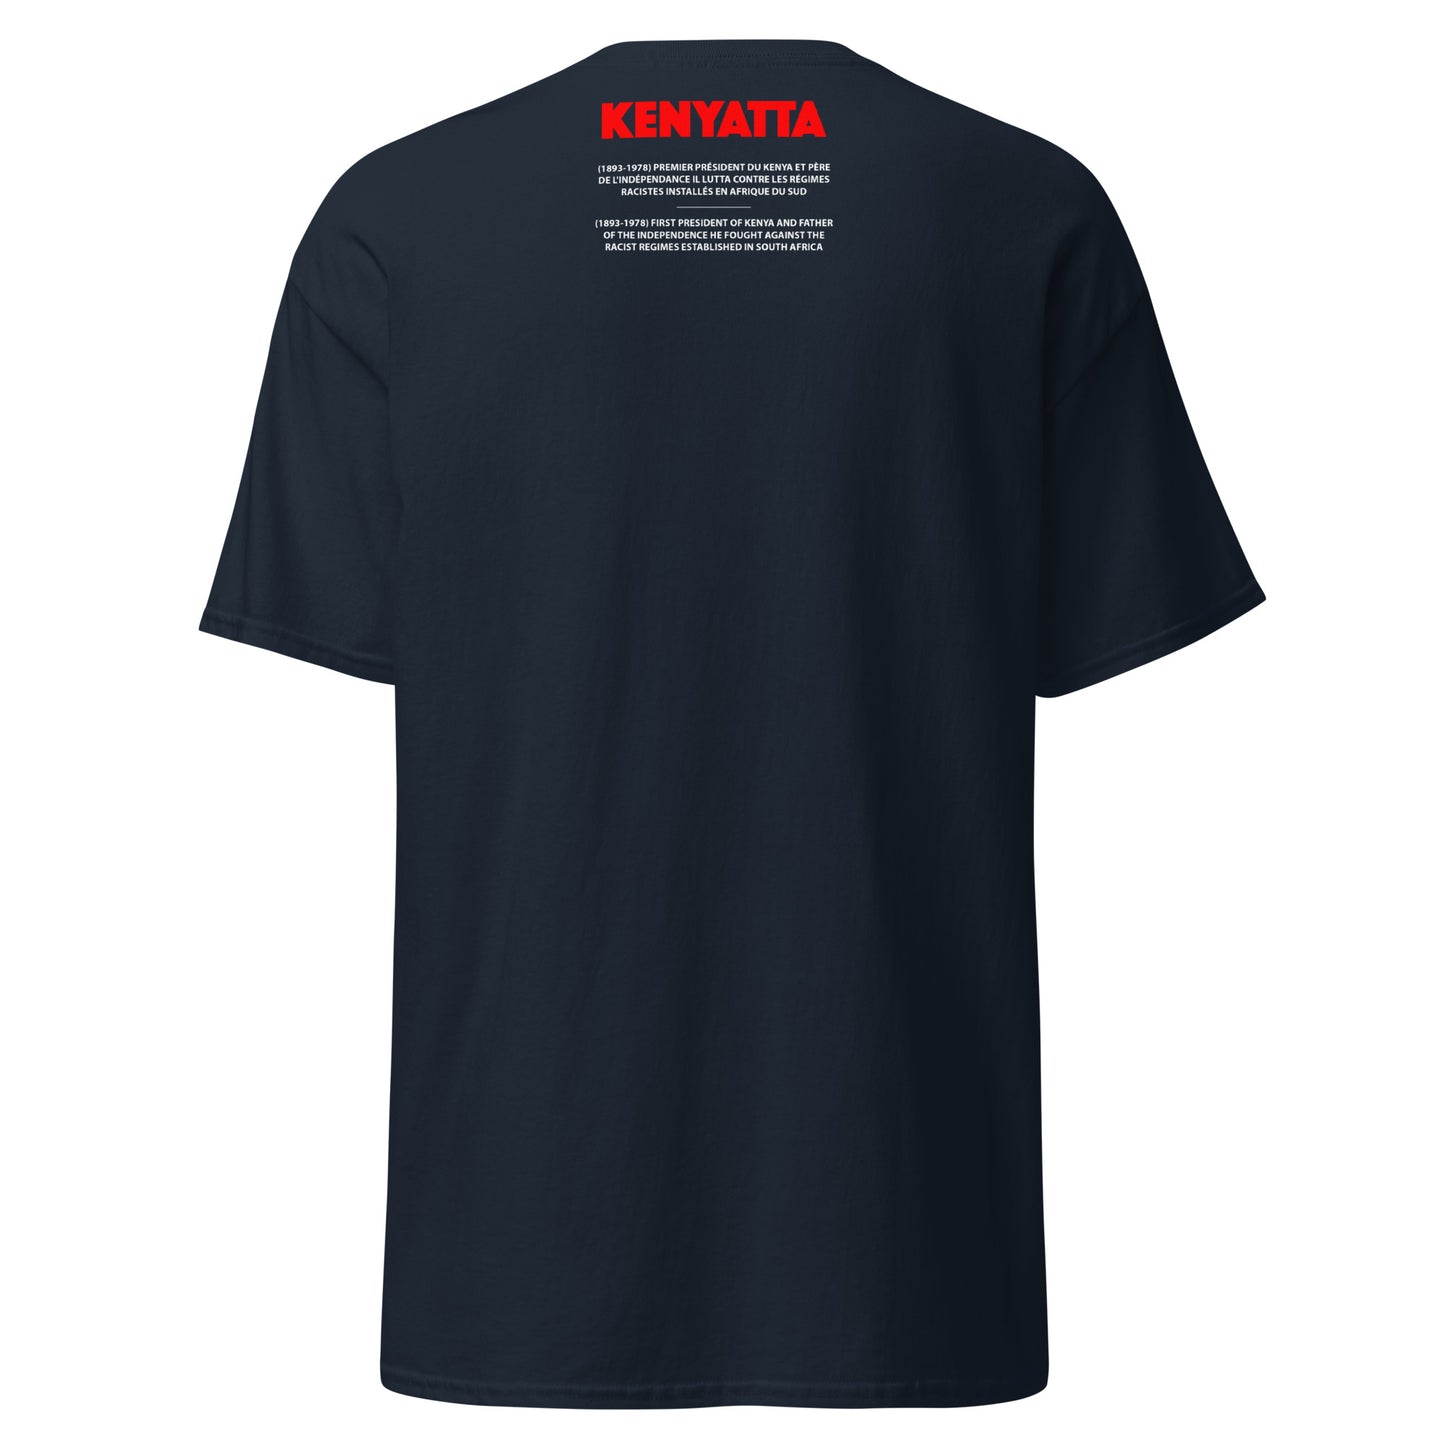 KENYATTA (T-Shirt Cadre)